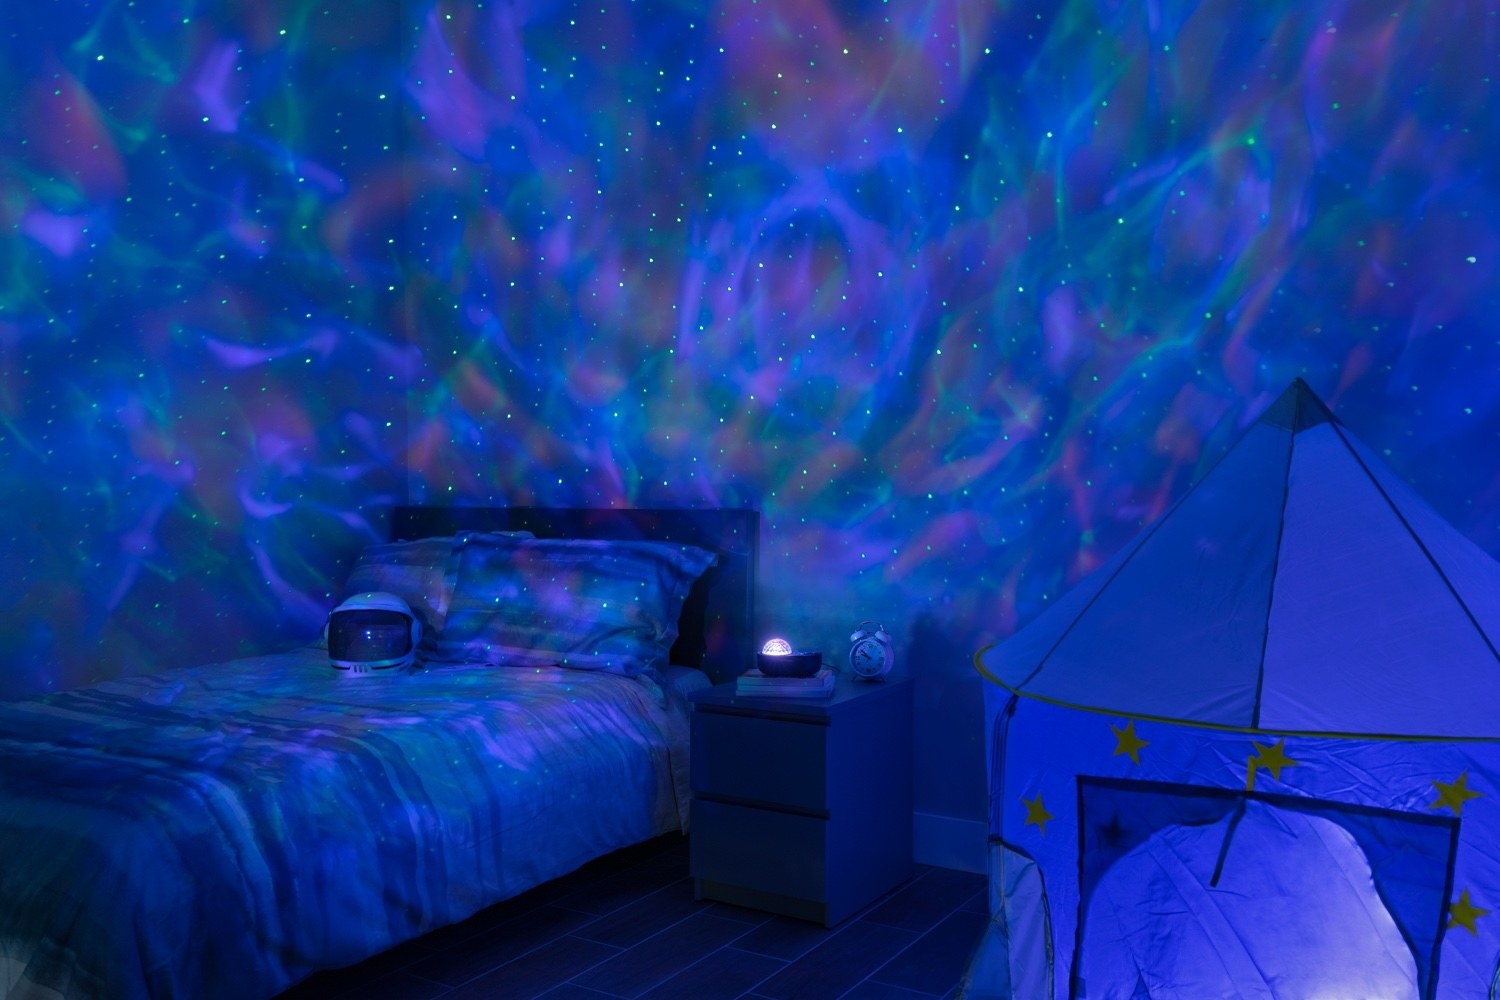 A projector illuminating a bedroom